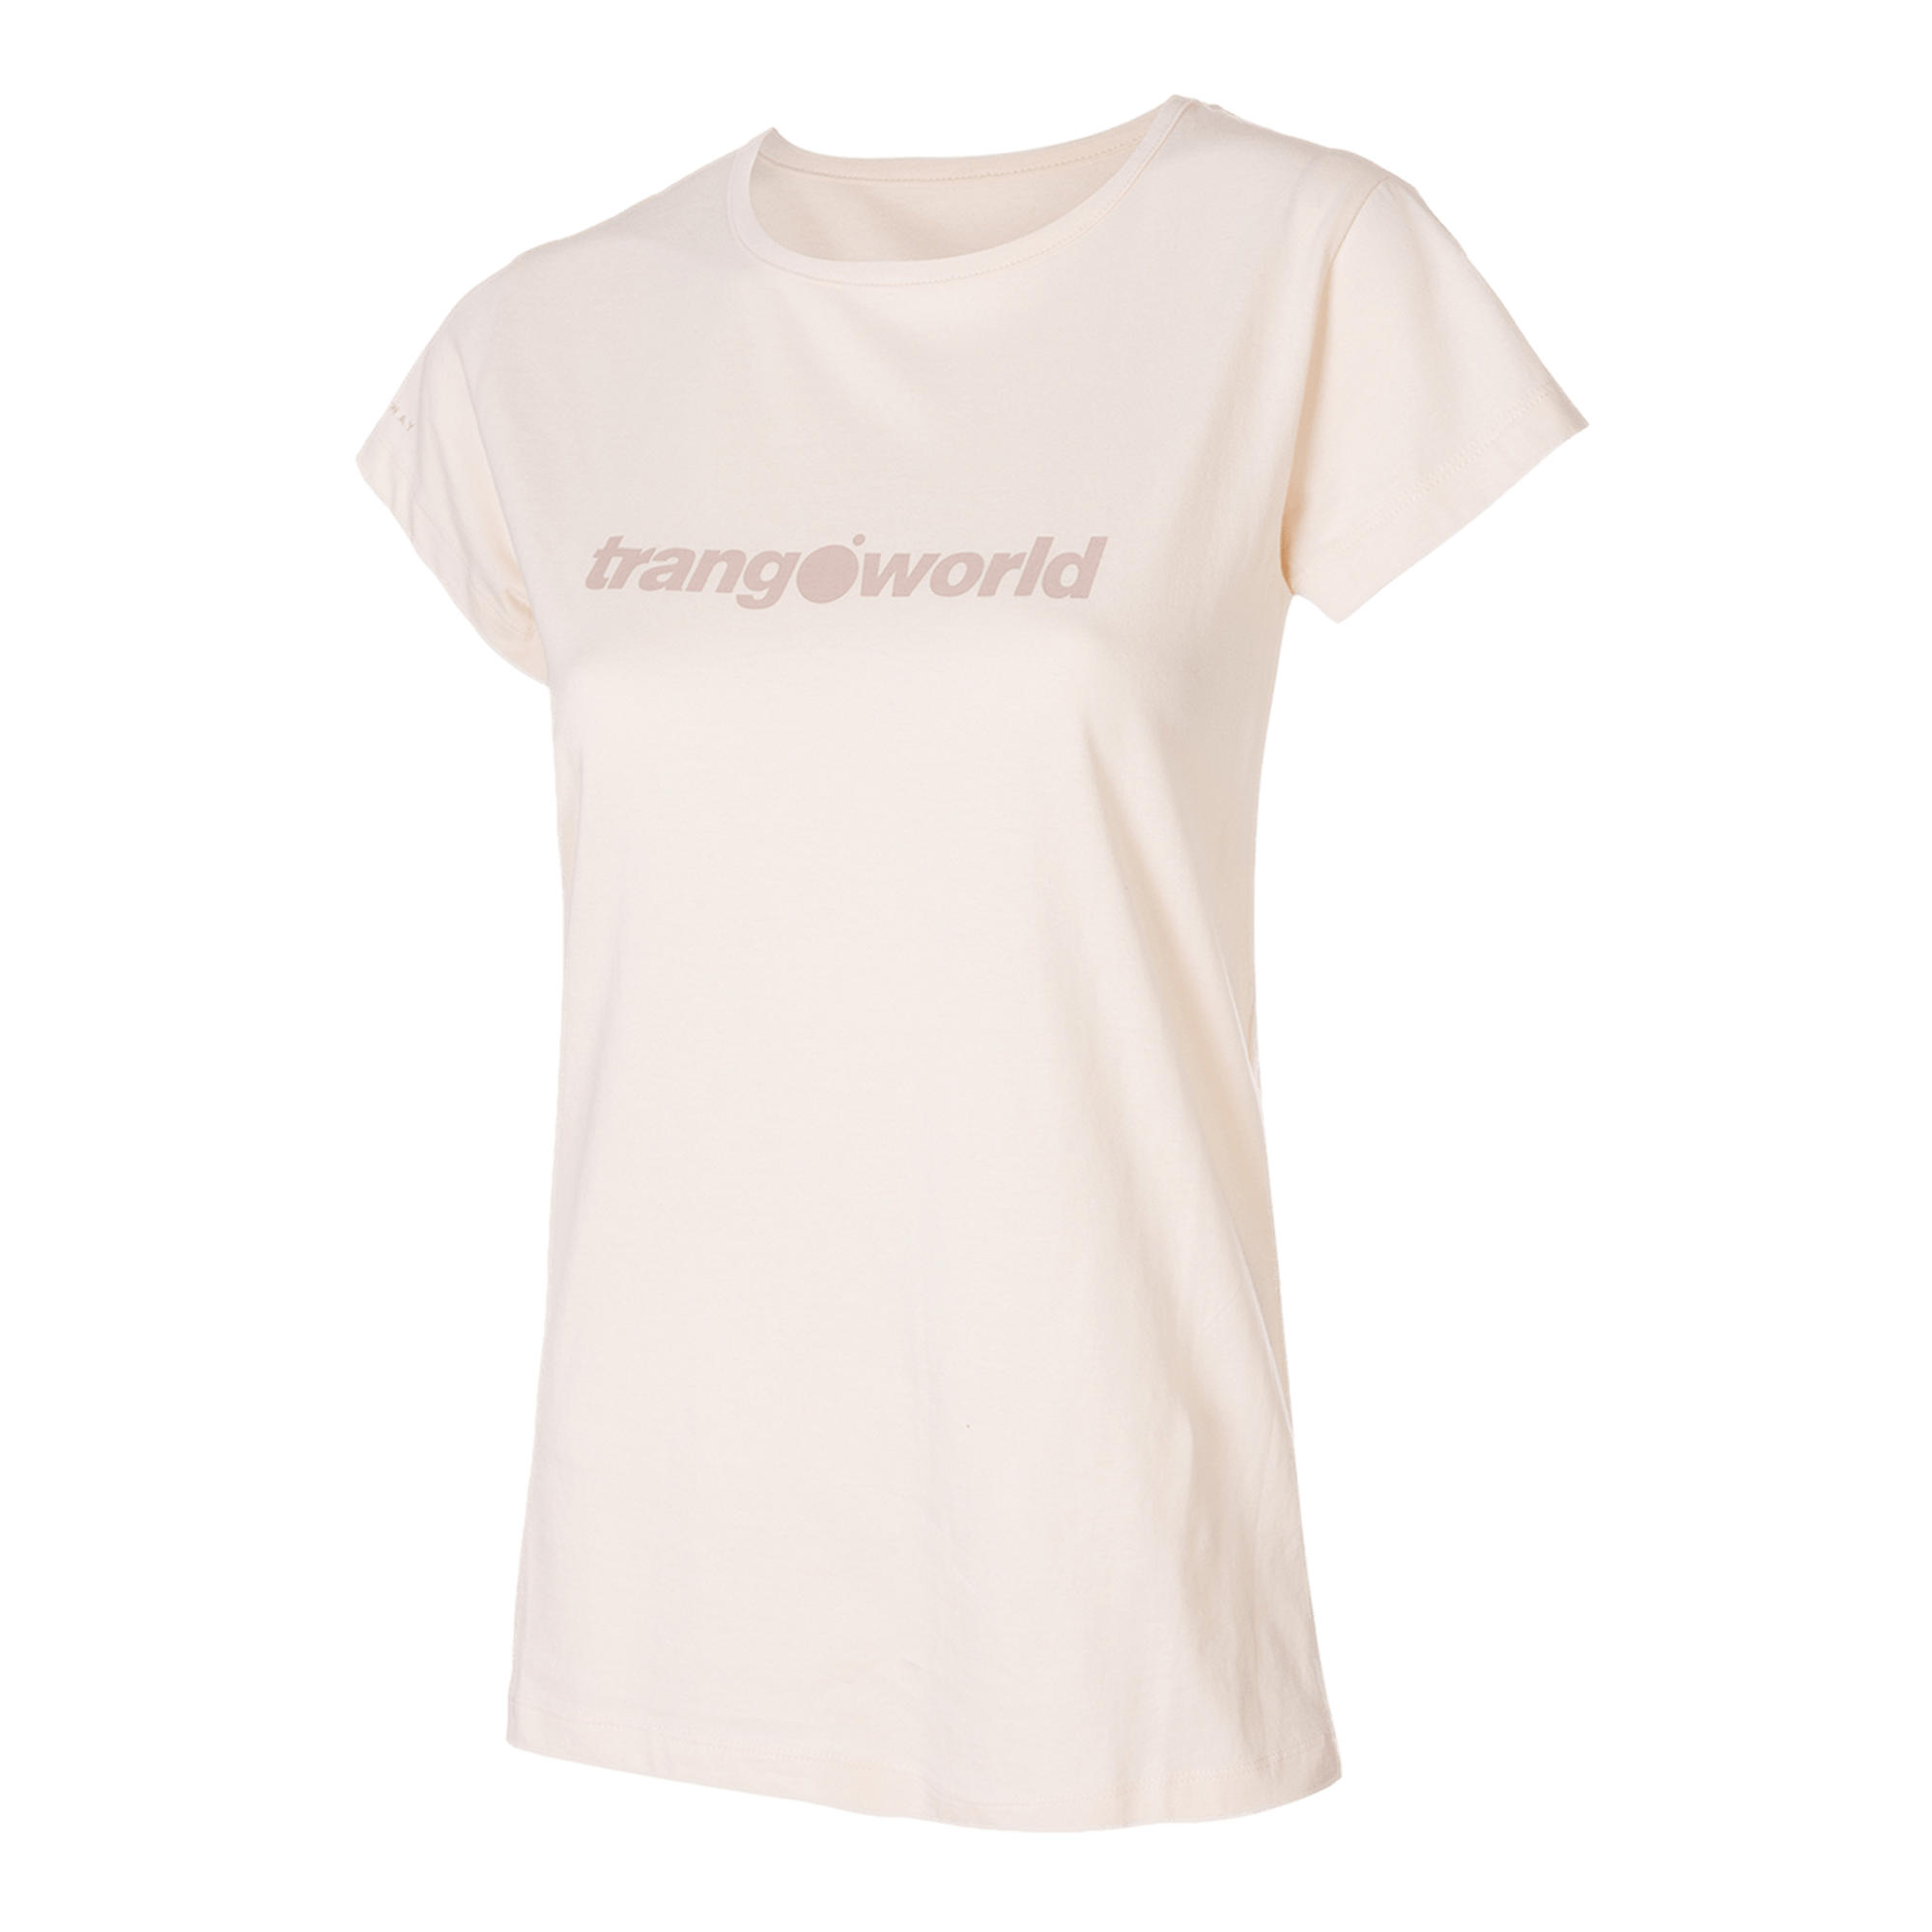 Camiseta Trangoworld Imola